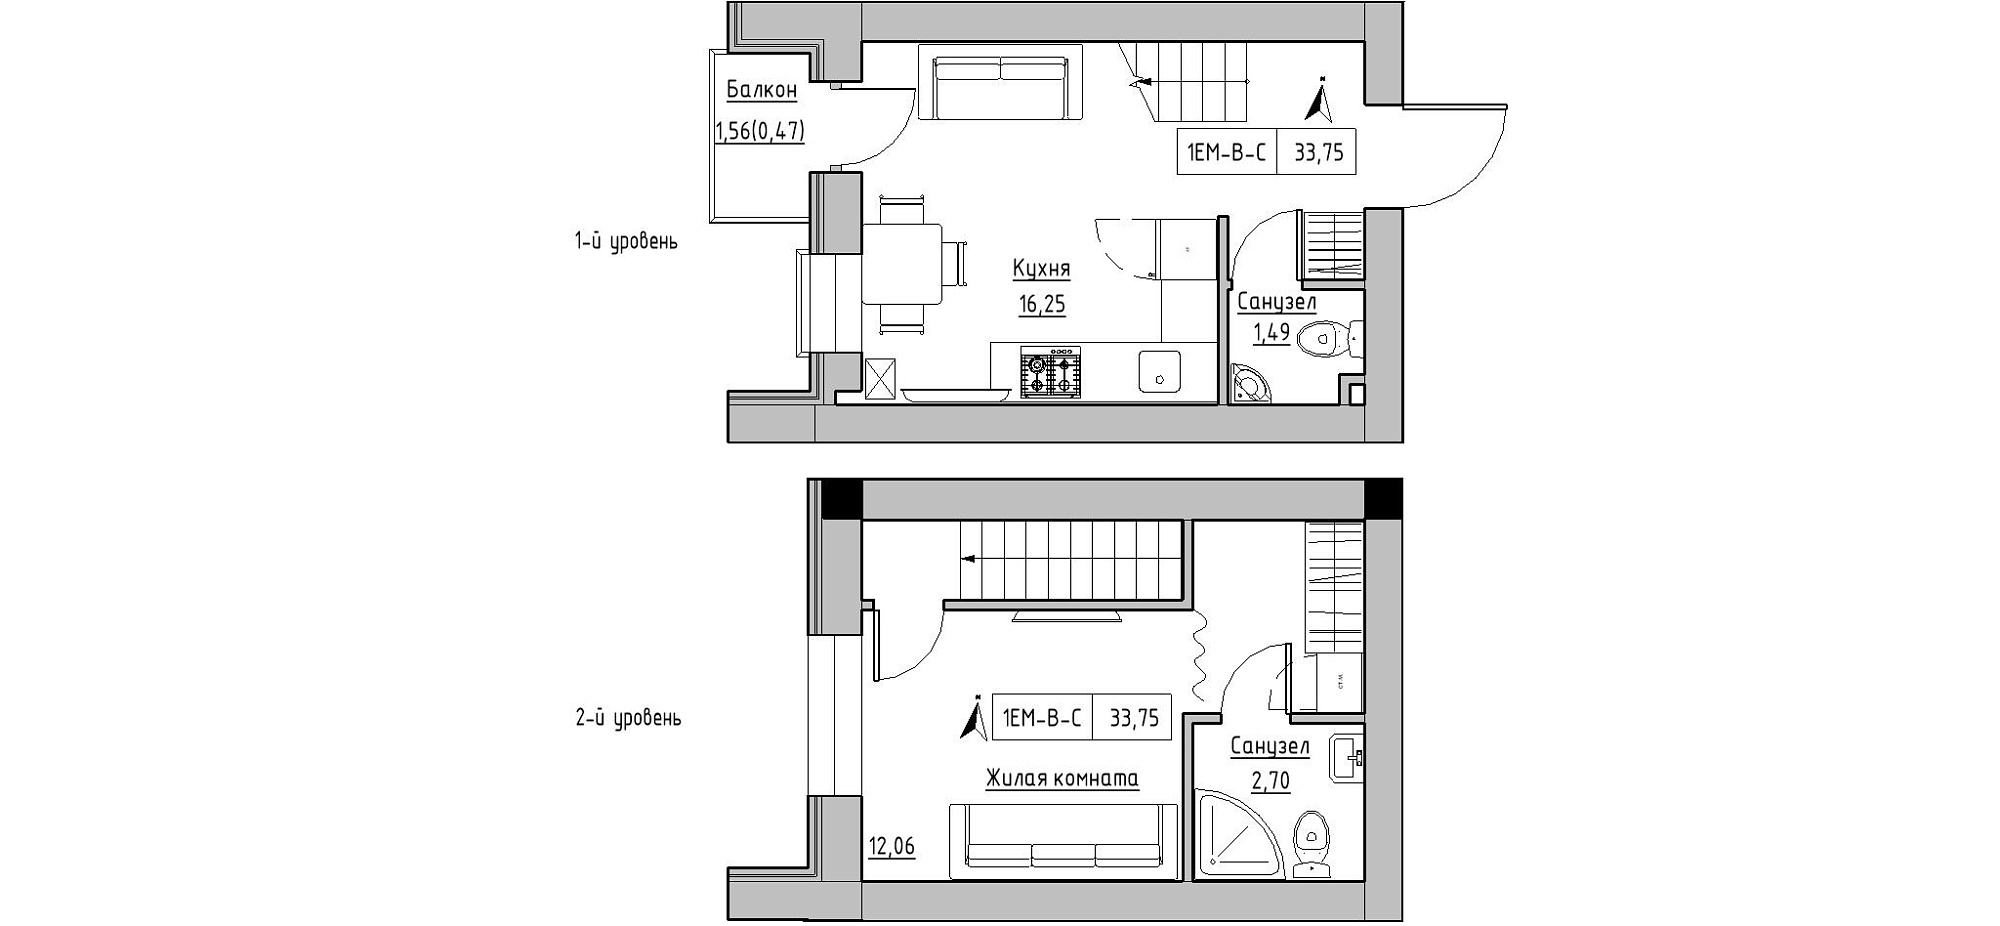 Planning 2-lvl flats area 33.75m2, KS-020-05/0013.